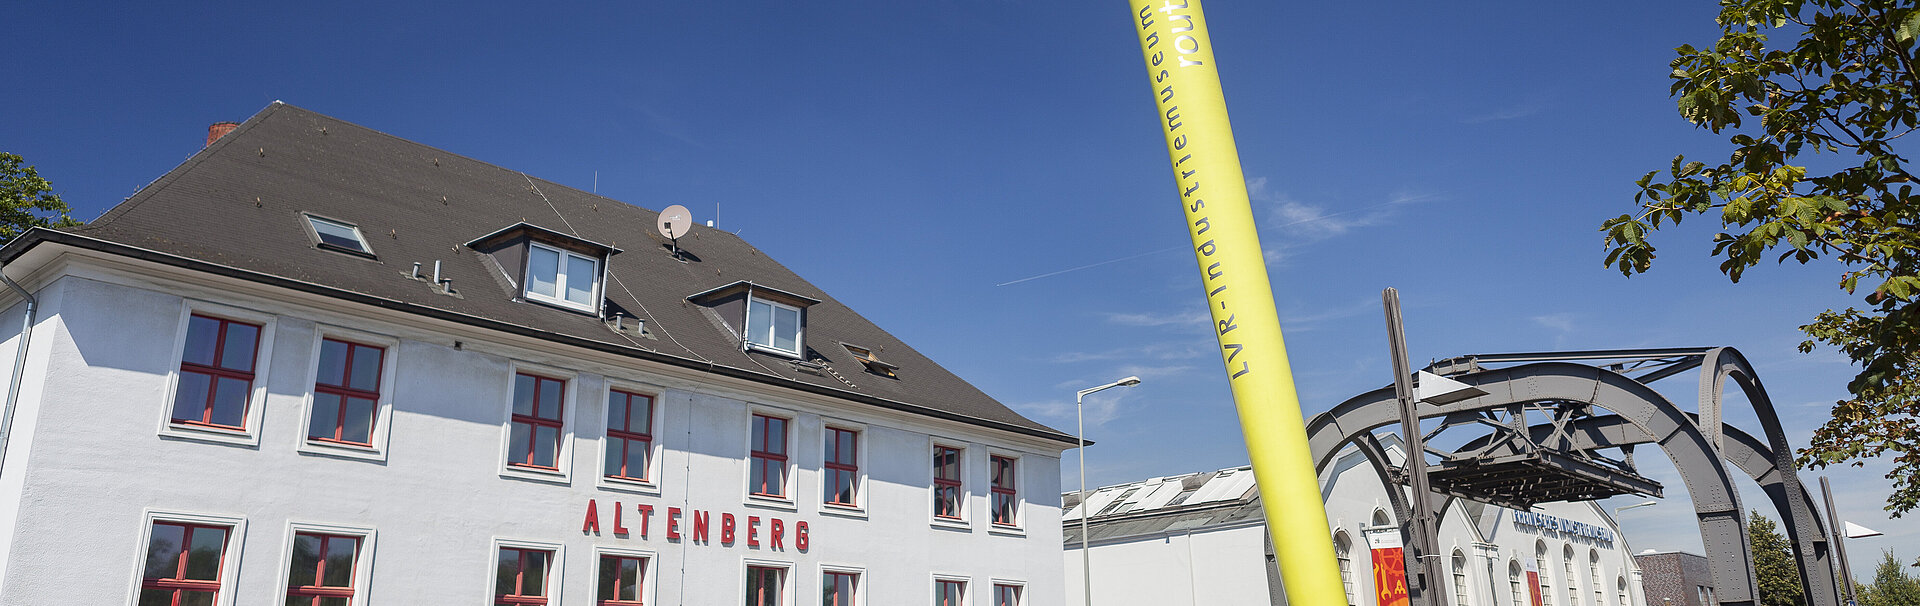 Das Signalobjekt vor der Zinkfabrik Altenberg zeigt an, dass es sich hier um einen Ankerpunkt auf der Route der Industriekultur handelt.